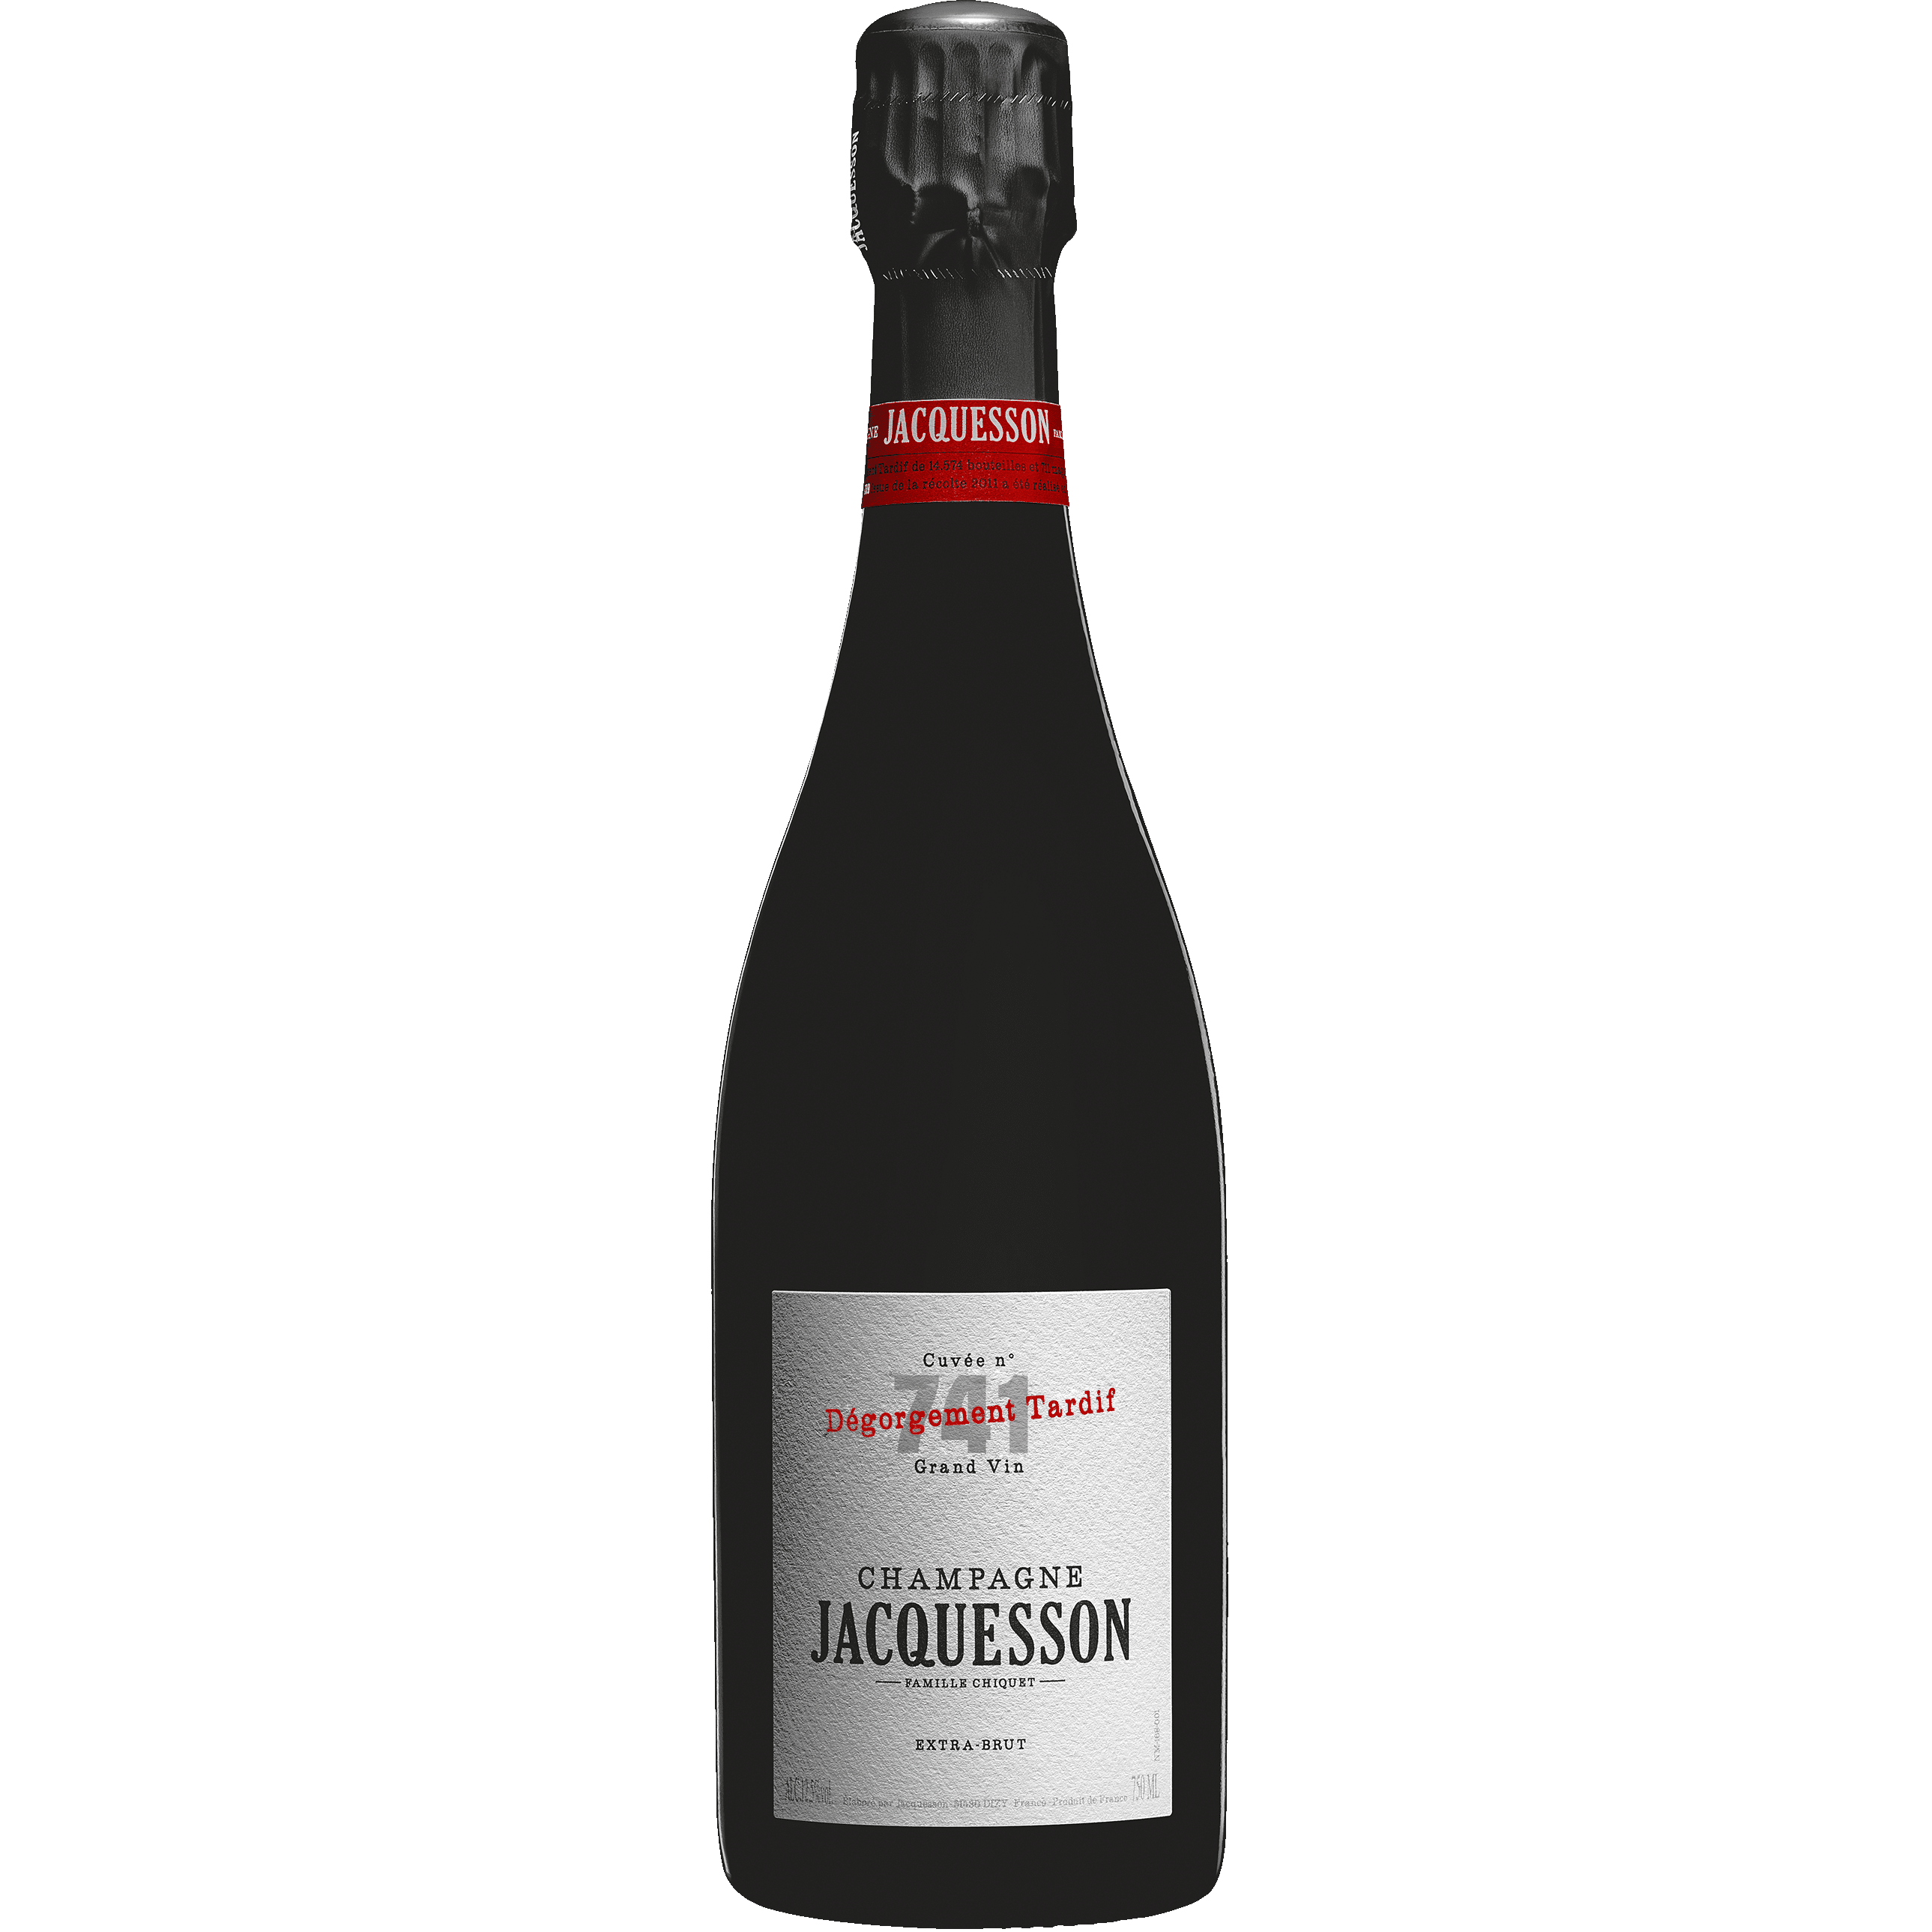 Champagne Jacquesson Cuvée n.741 Dégorgement Tardif